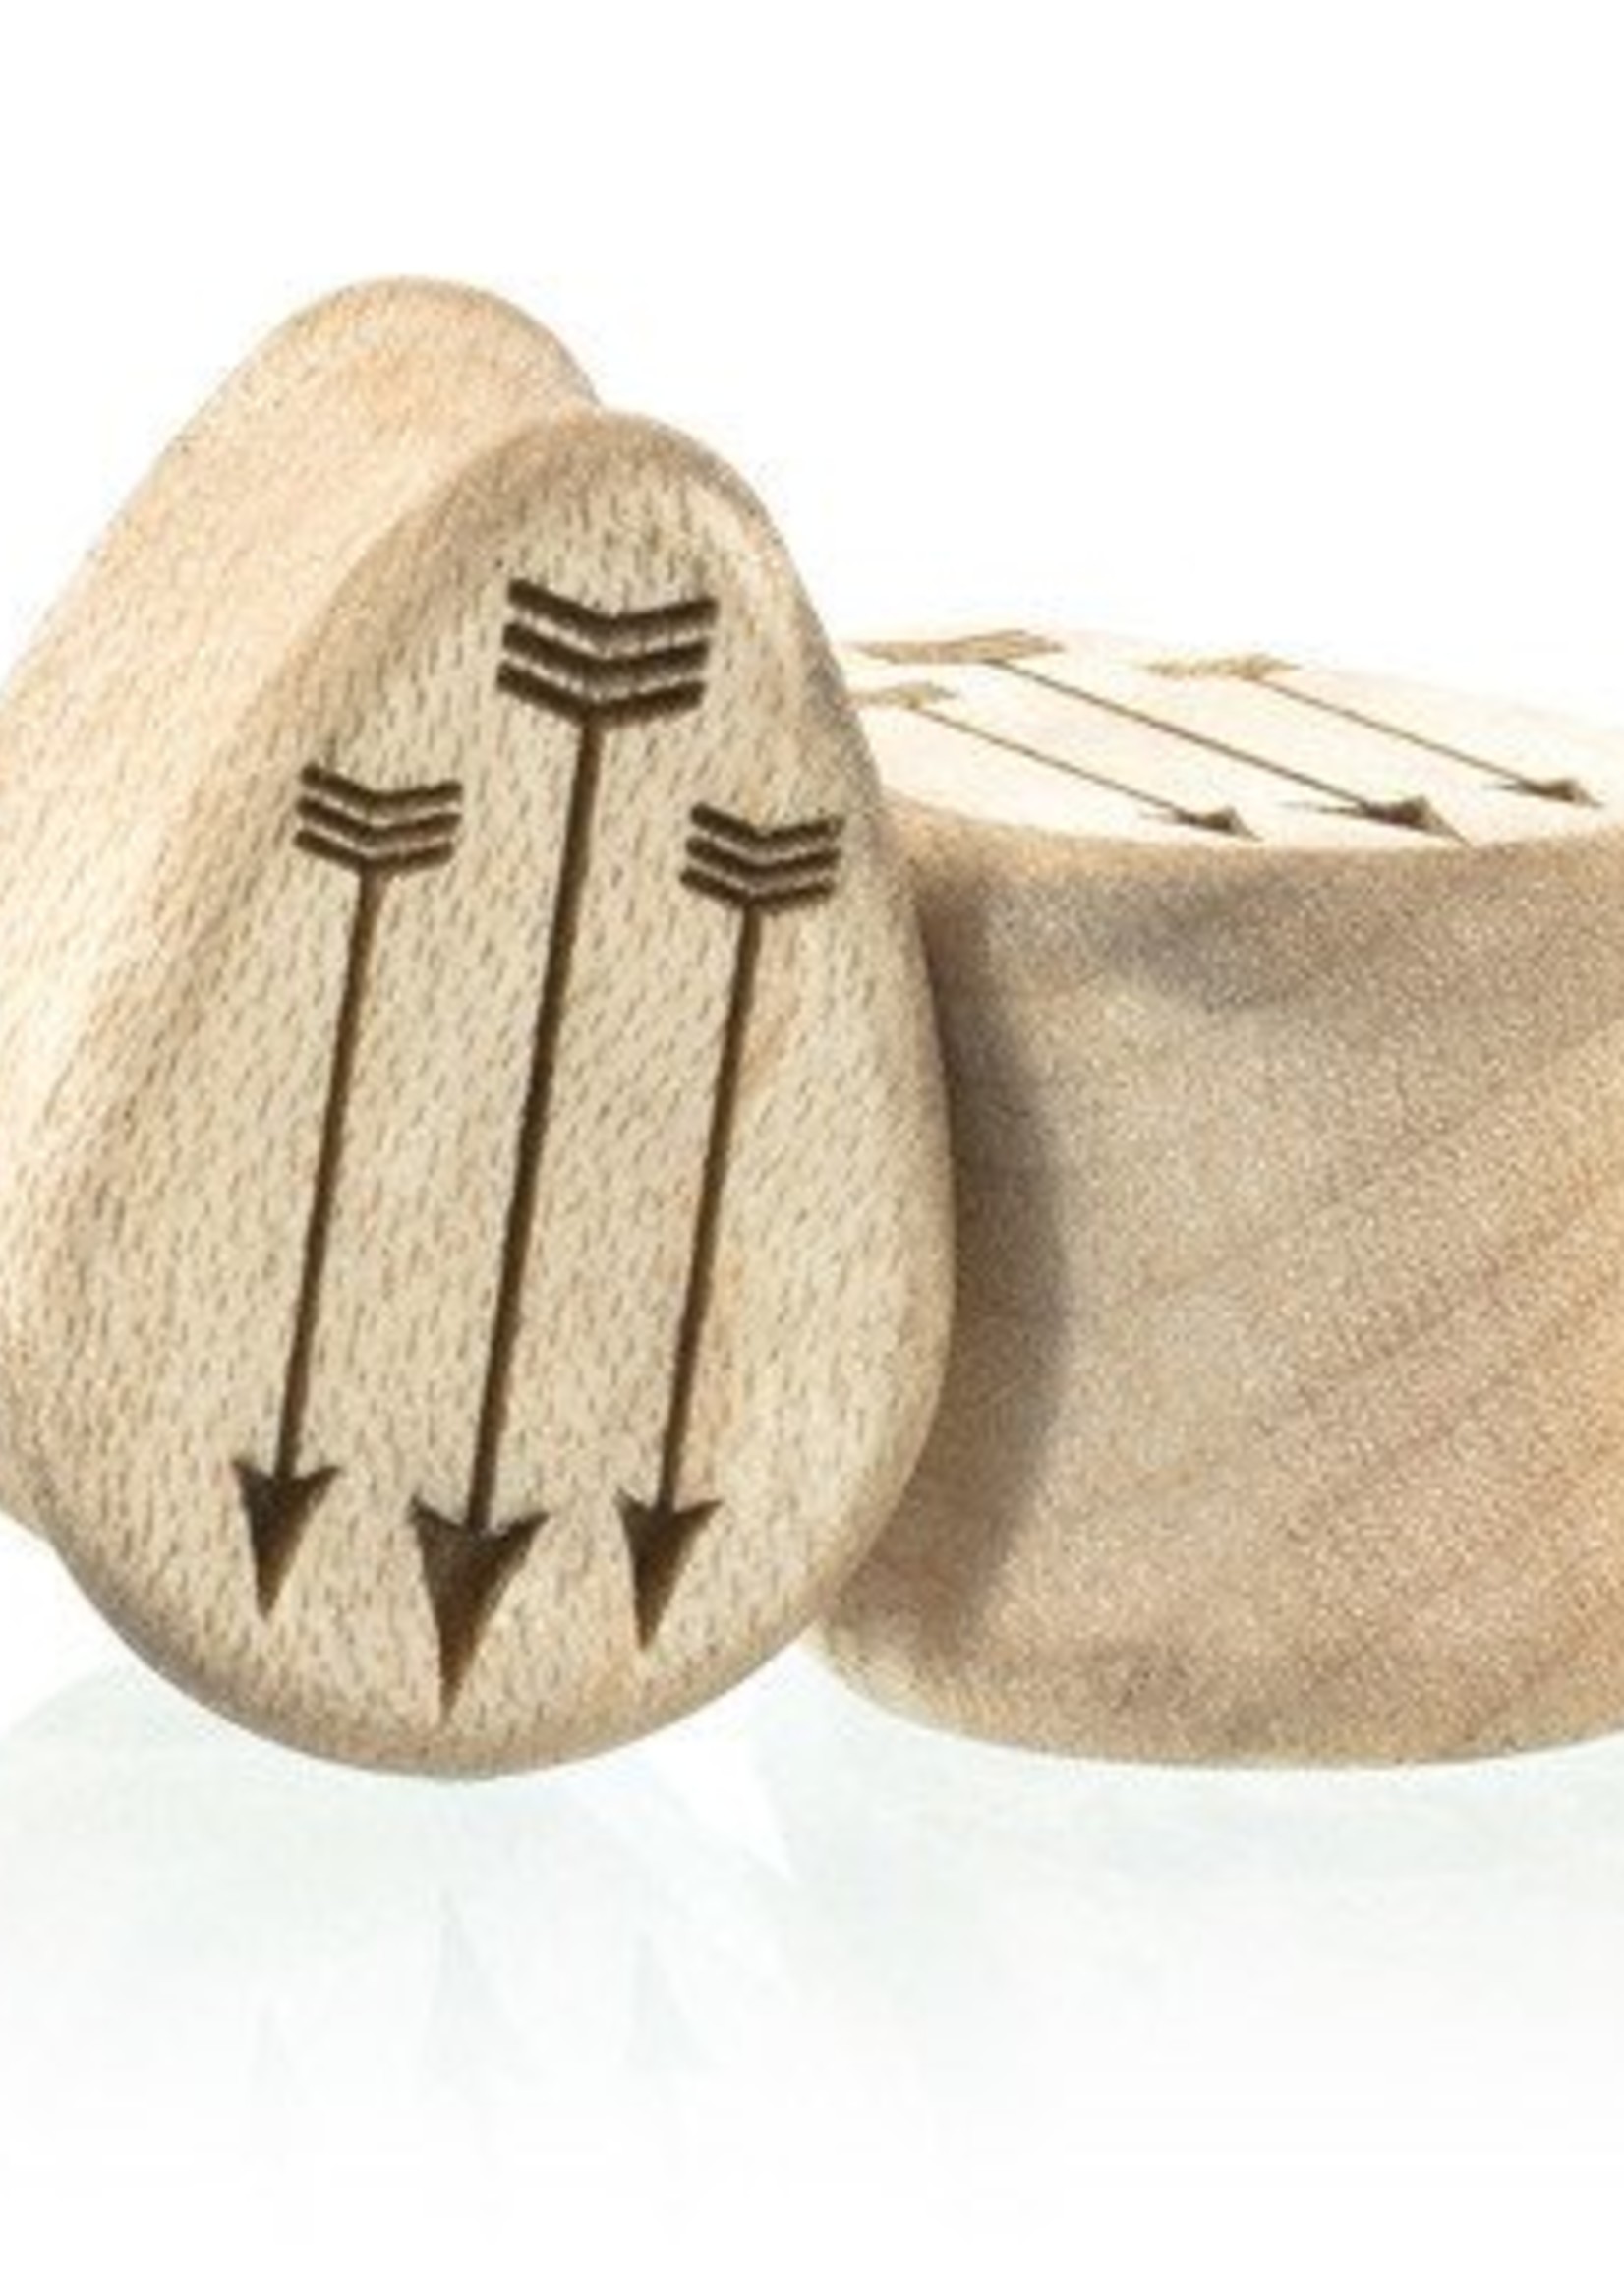 7/8" Arrow Wood Teardrops